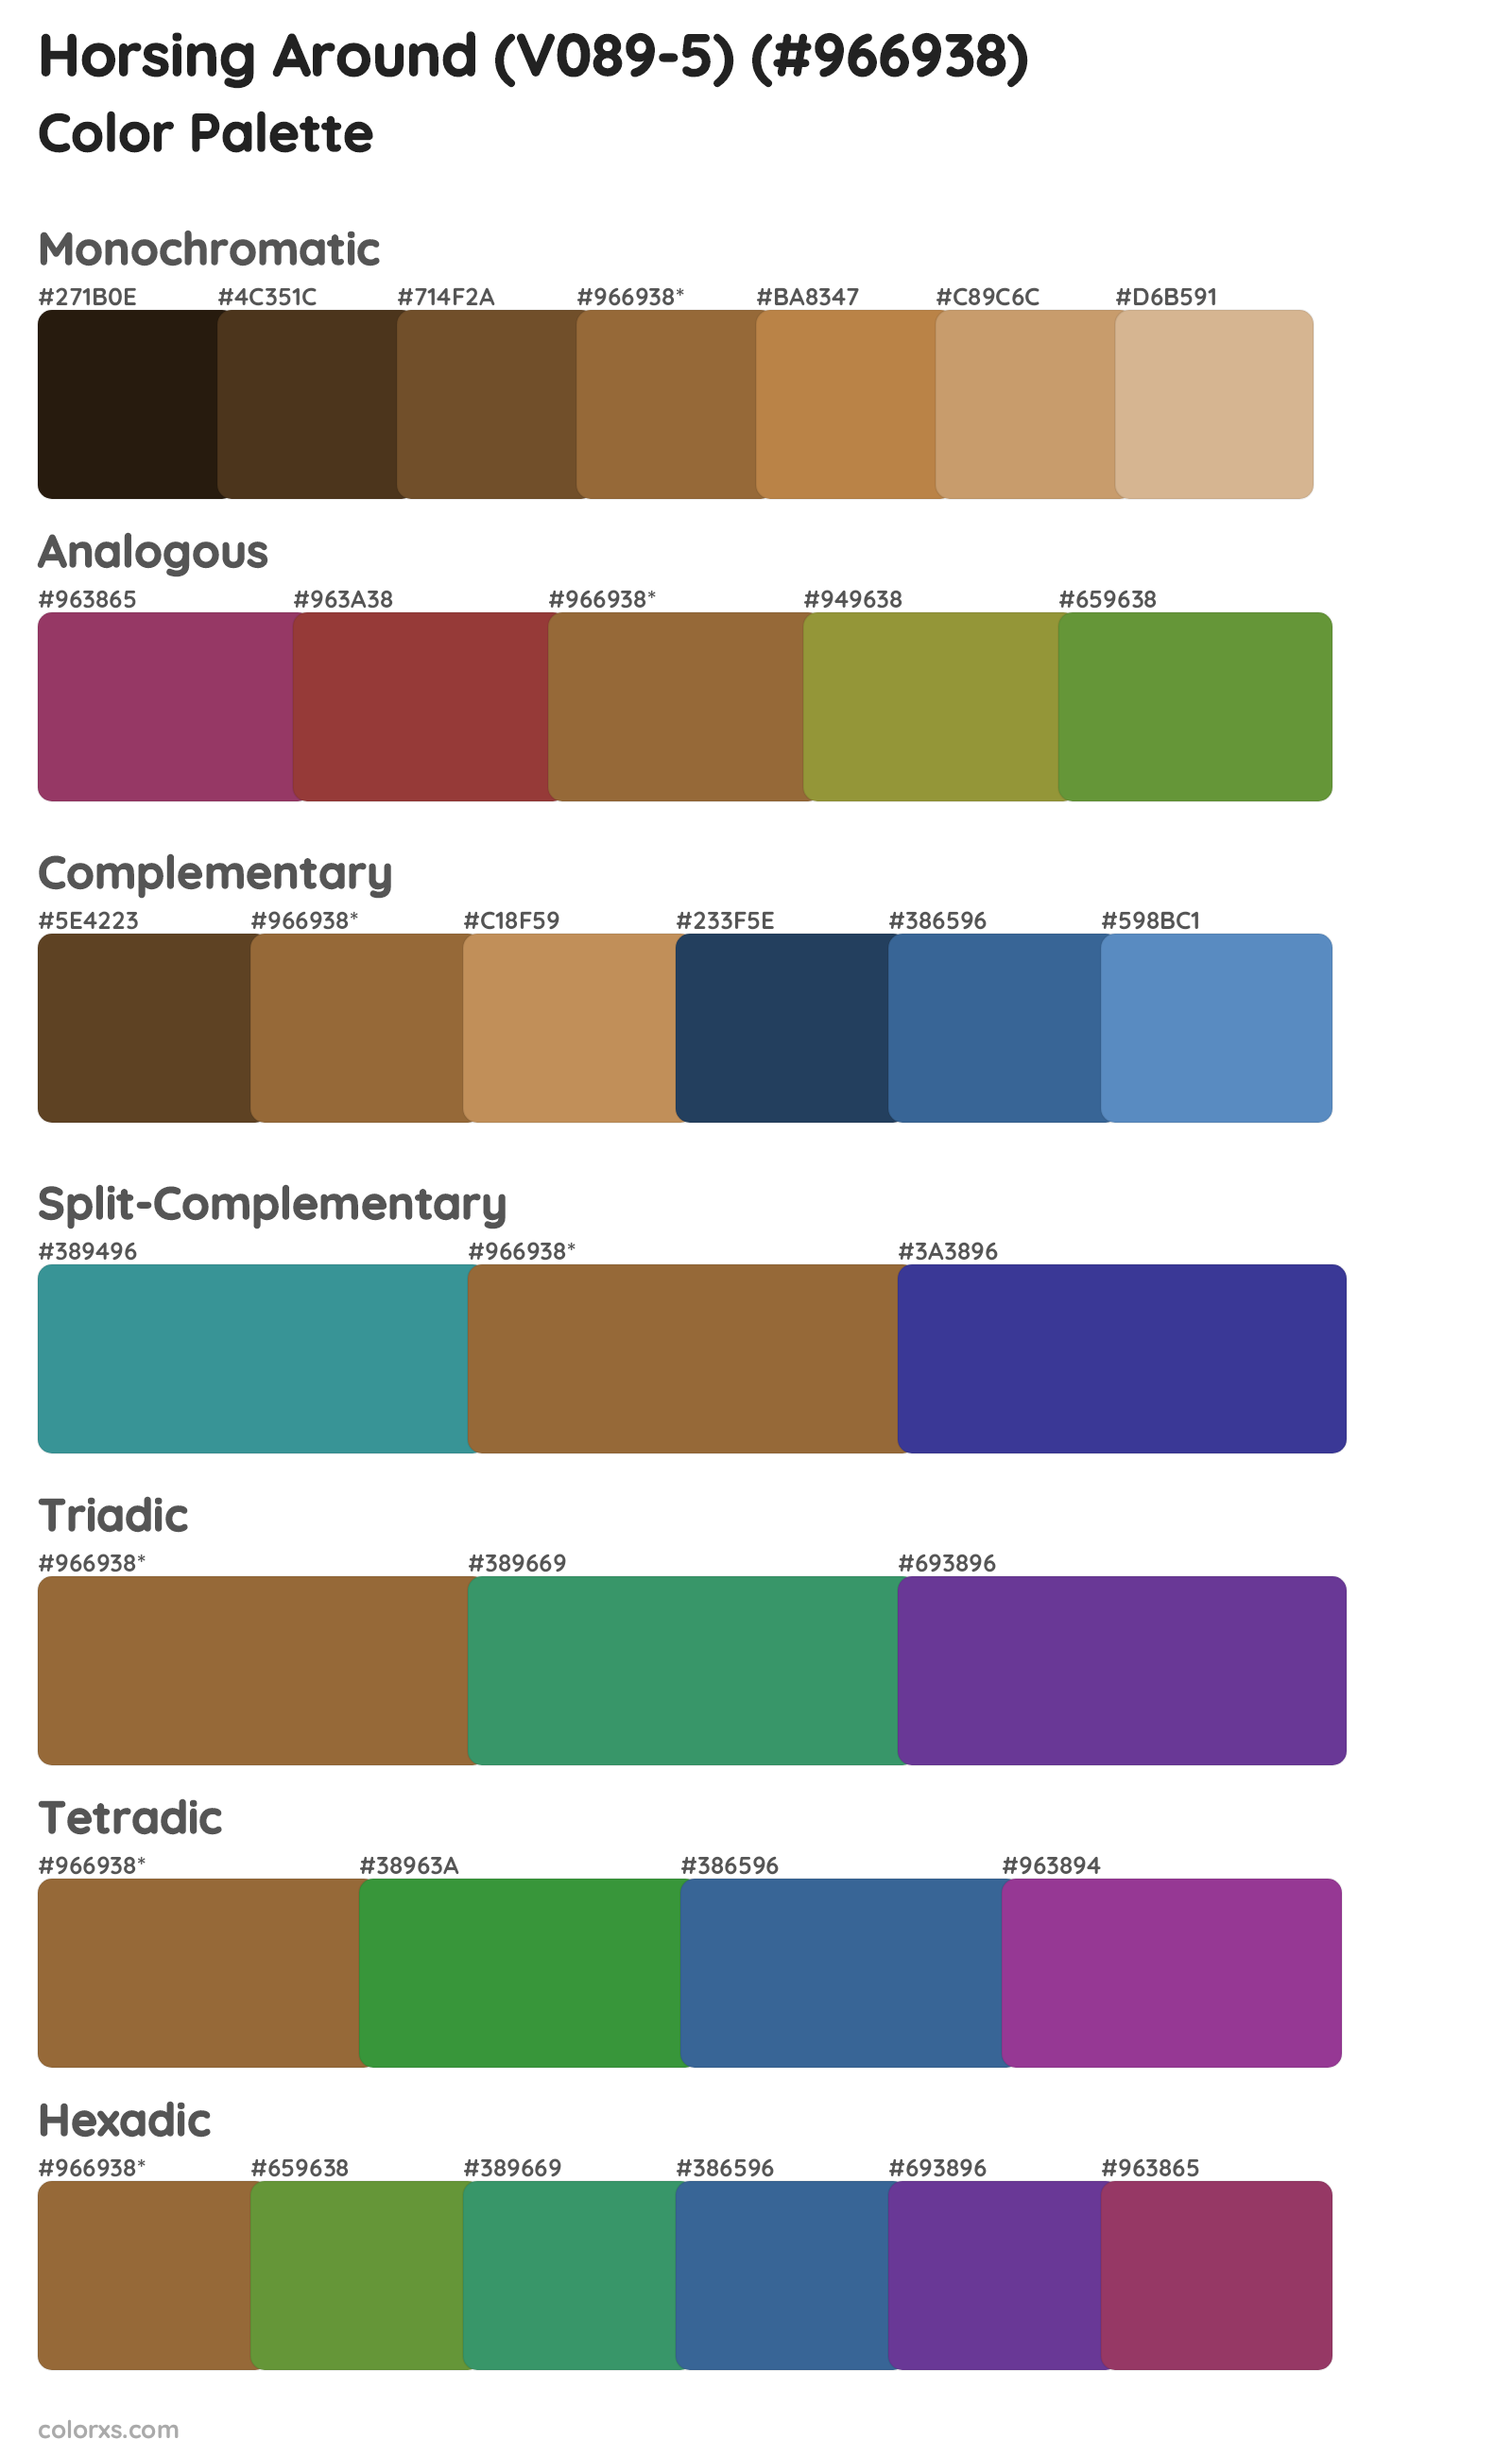 Horsing Around (V089-5) Color Scheme Palettes